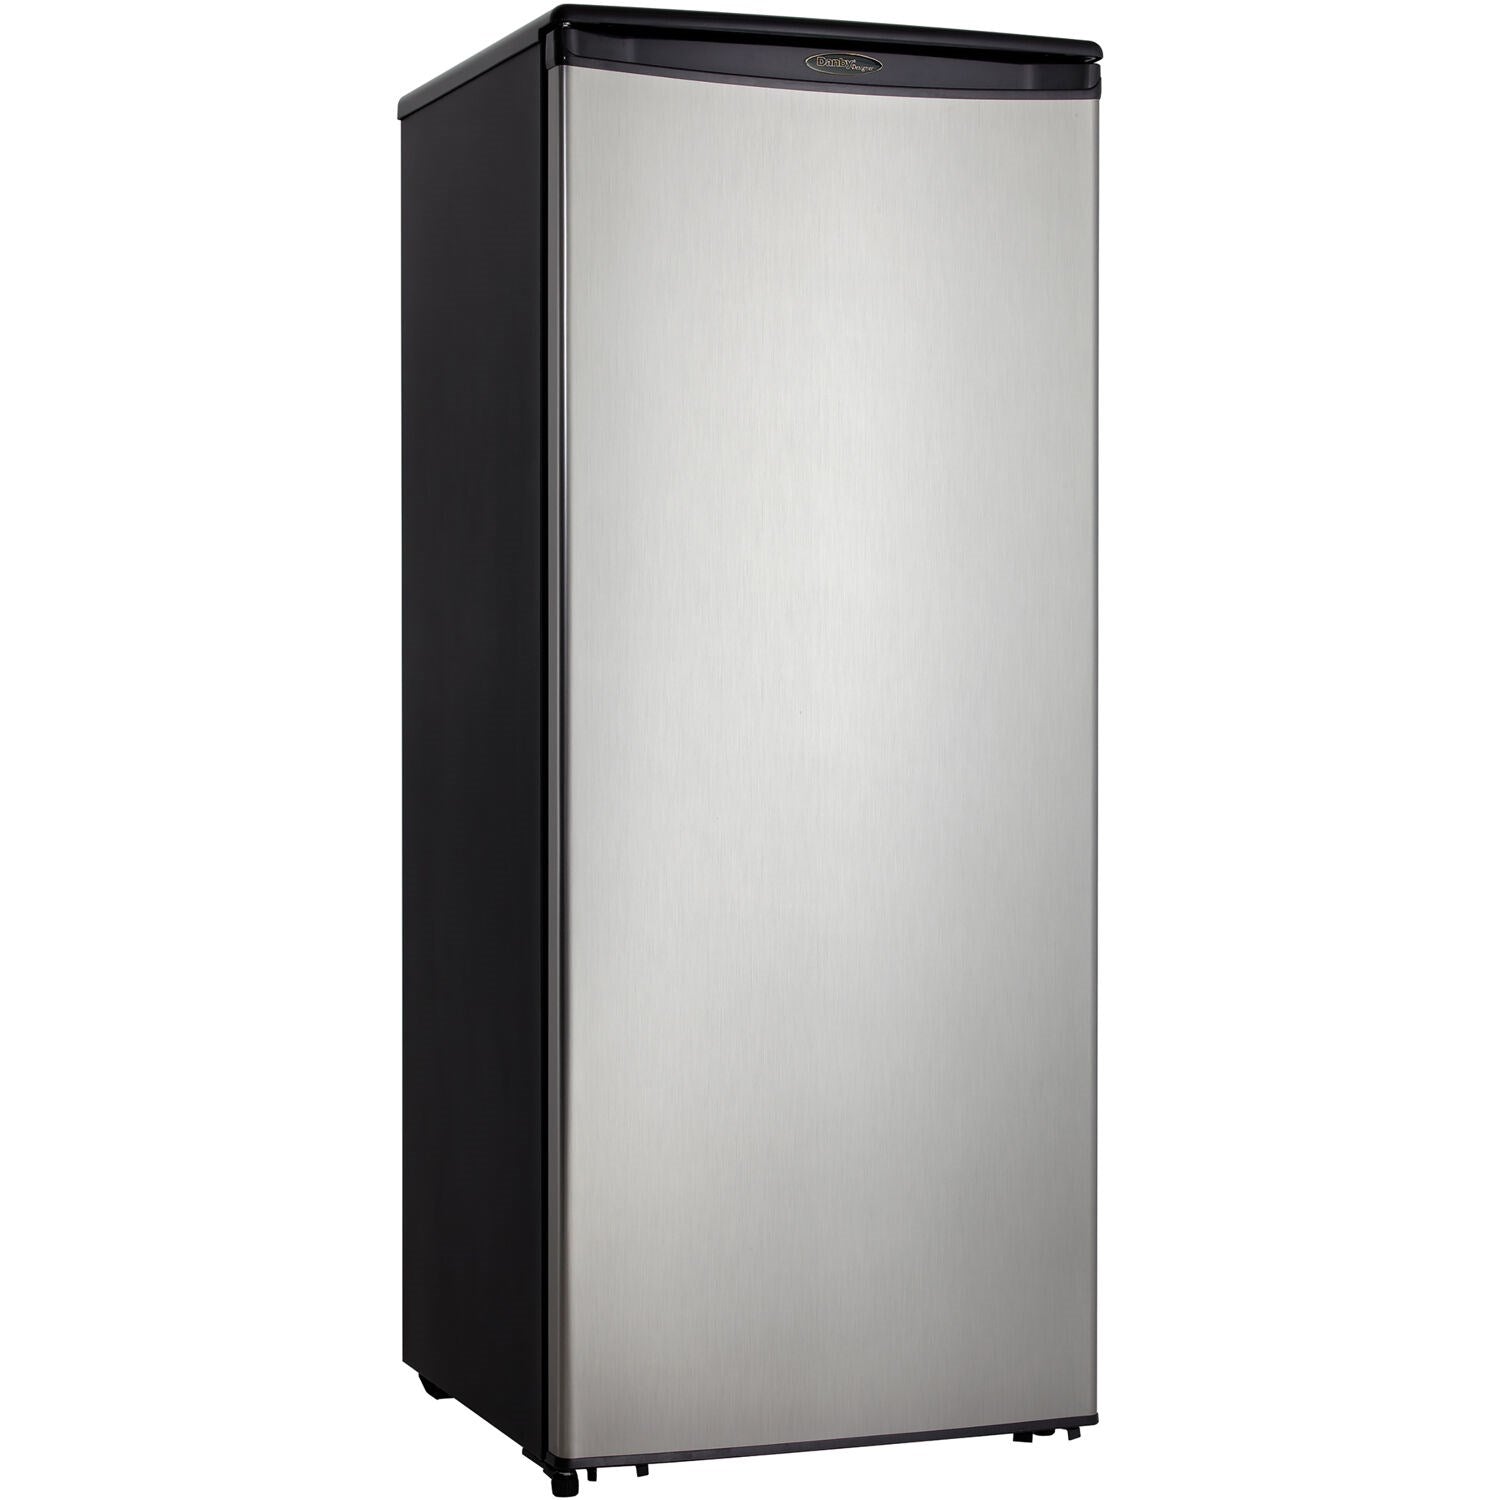 Danby - 11 CuFt. All Refrigerator, 4 Slide Out Glass Shelves, Crisper, Worktop